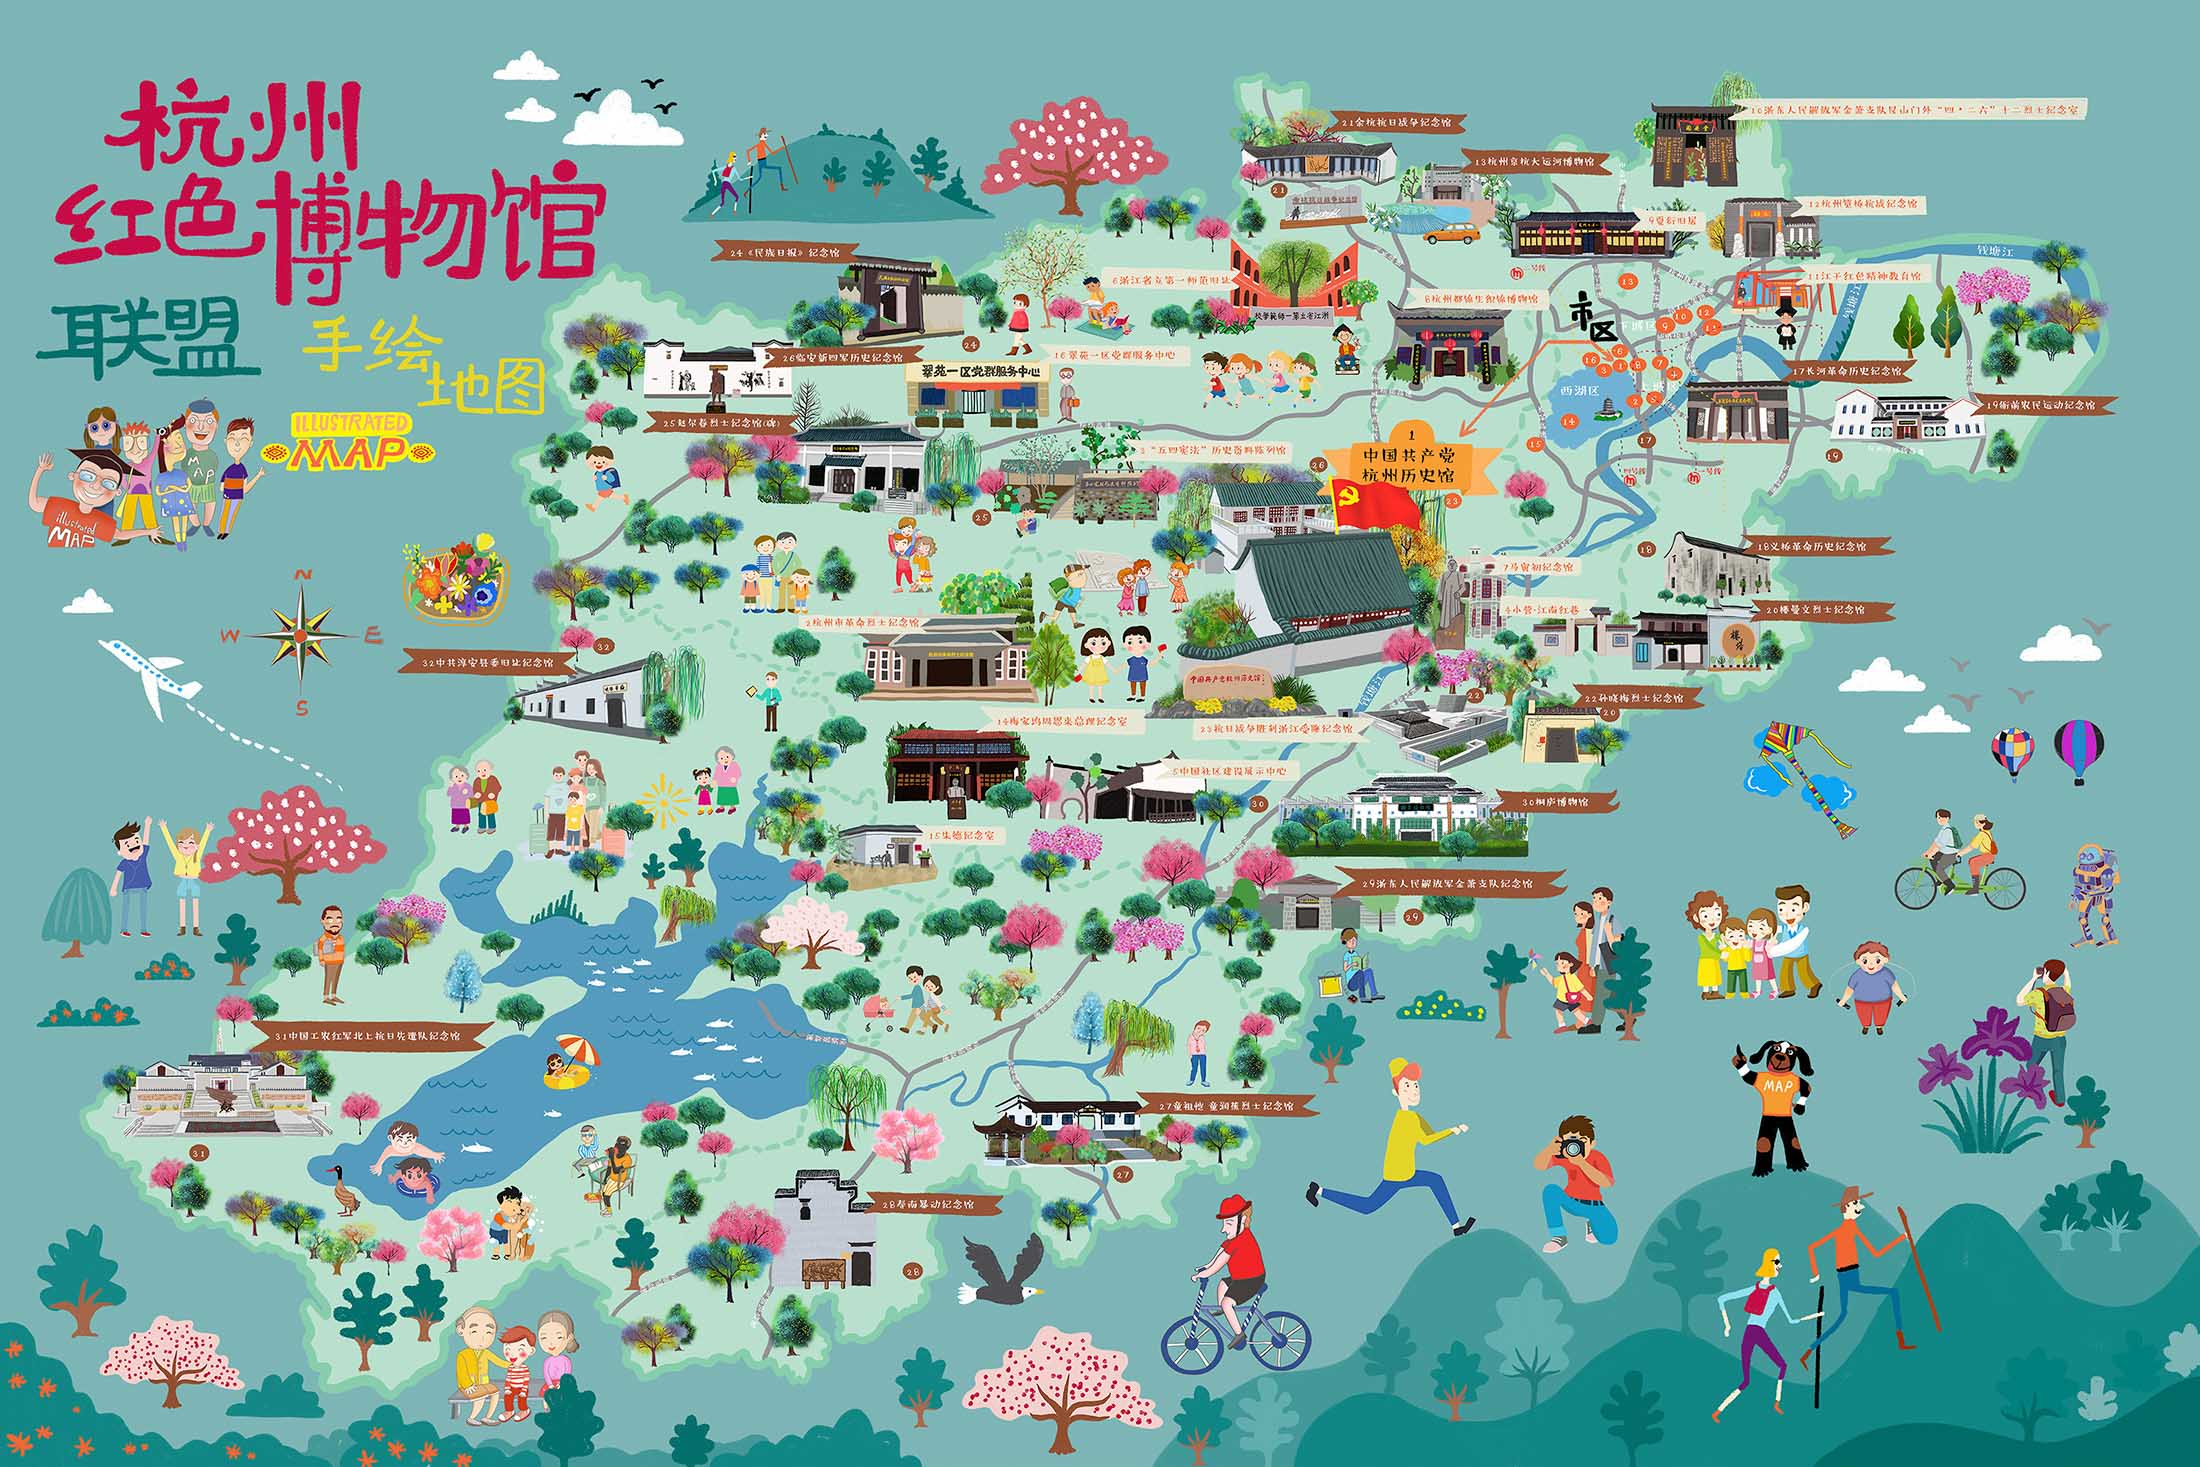 新津手绘地图与科技的完美结合 